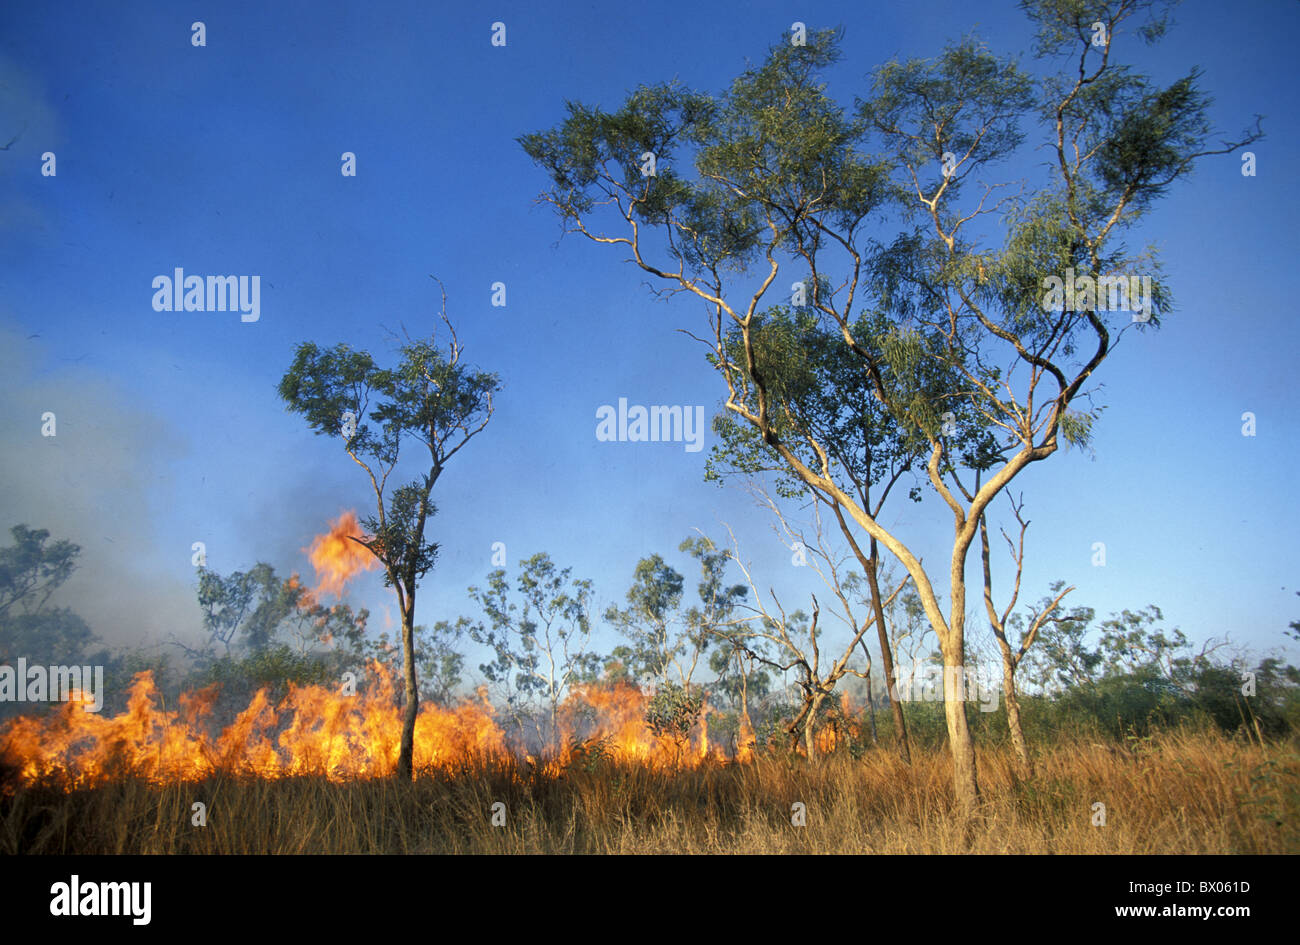 Feu de brousse Australie g's fire flames Gibb River Road outback de l'Australie de l'ouest les arbres de Kimberley Banque D'Images